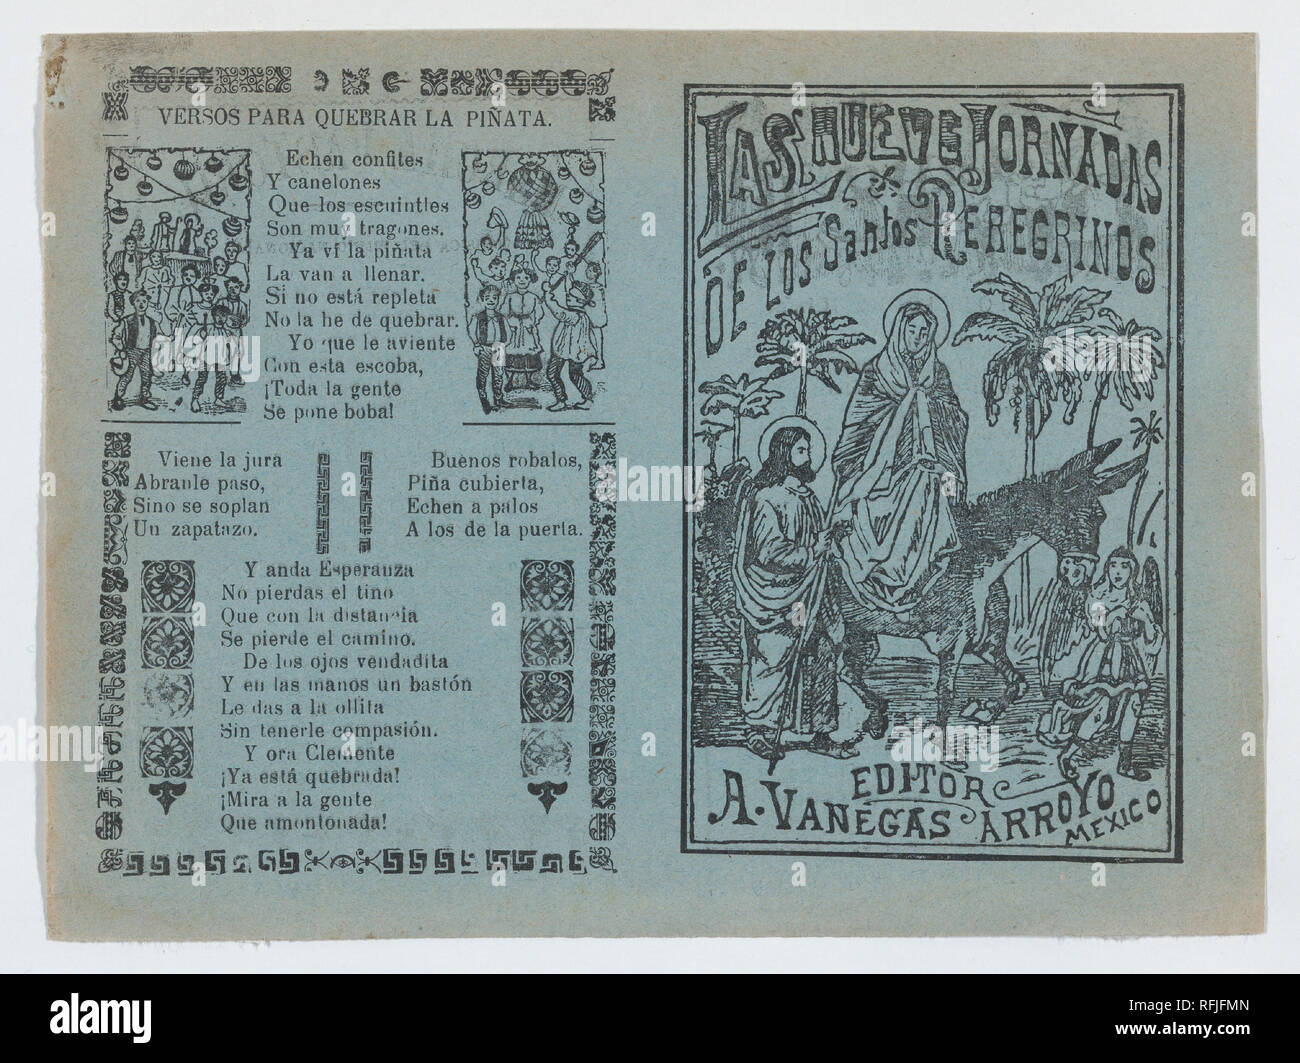 Deux publicités imprimées sur la même feuille pour le matériel publié par l'un, l'Arroyo Vanegas à gauche a versets pour accompagner une piñata de rupture et à droite, en ce qui concerne les pèlerins religieux avec une image de la Sainte Famille sur la fuite en Égypte. Artiste : José Guadalupe Posada (1851-1913), Mexicain. Fiche Technique : Dimensions : 5 7/8 x 7 7/8 in. (15 × 20 cm). Editeur : Antonio Vanegas Arroyo (1850-1917, Mexique). Date : ca. 1900-10. Musée : Metropolitan Museum of Art, New York, USA. Banque D'Images